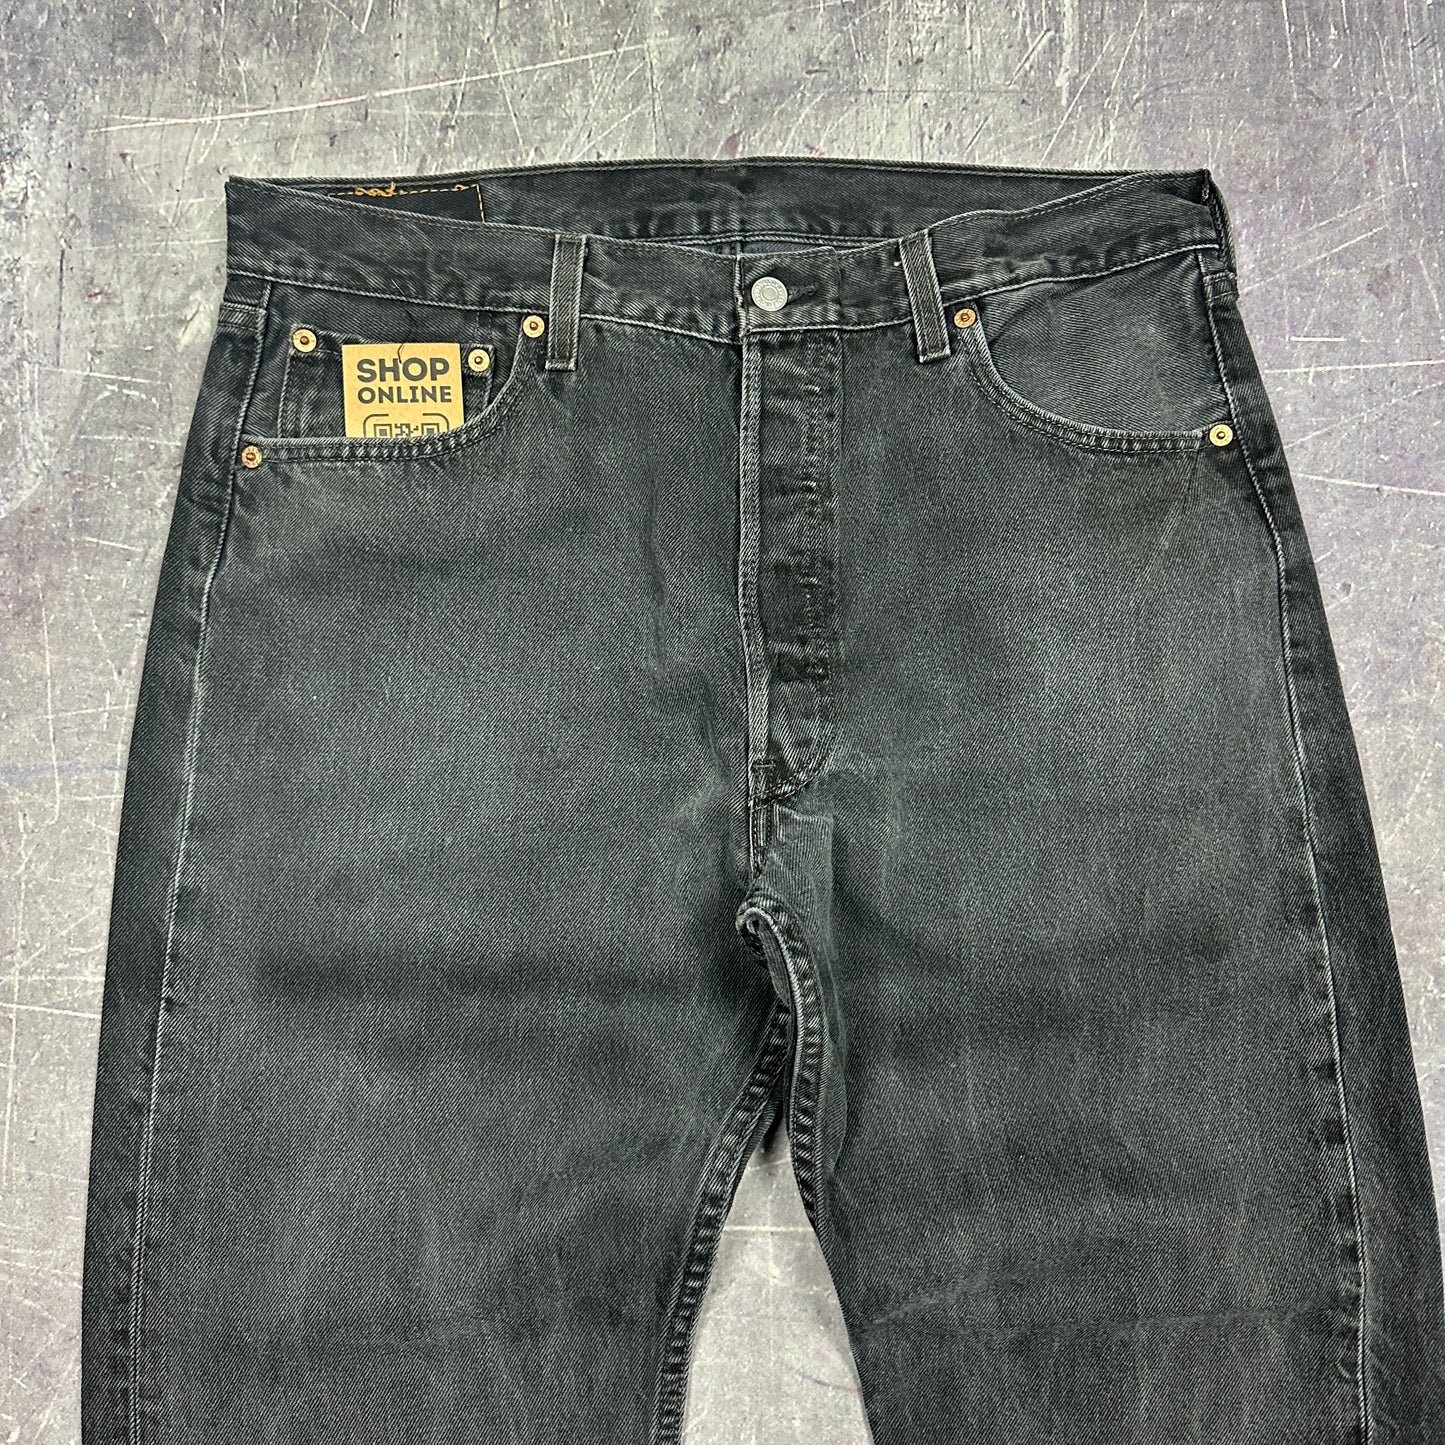 90s Black Levis 501 Jeans 35x30 A31